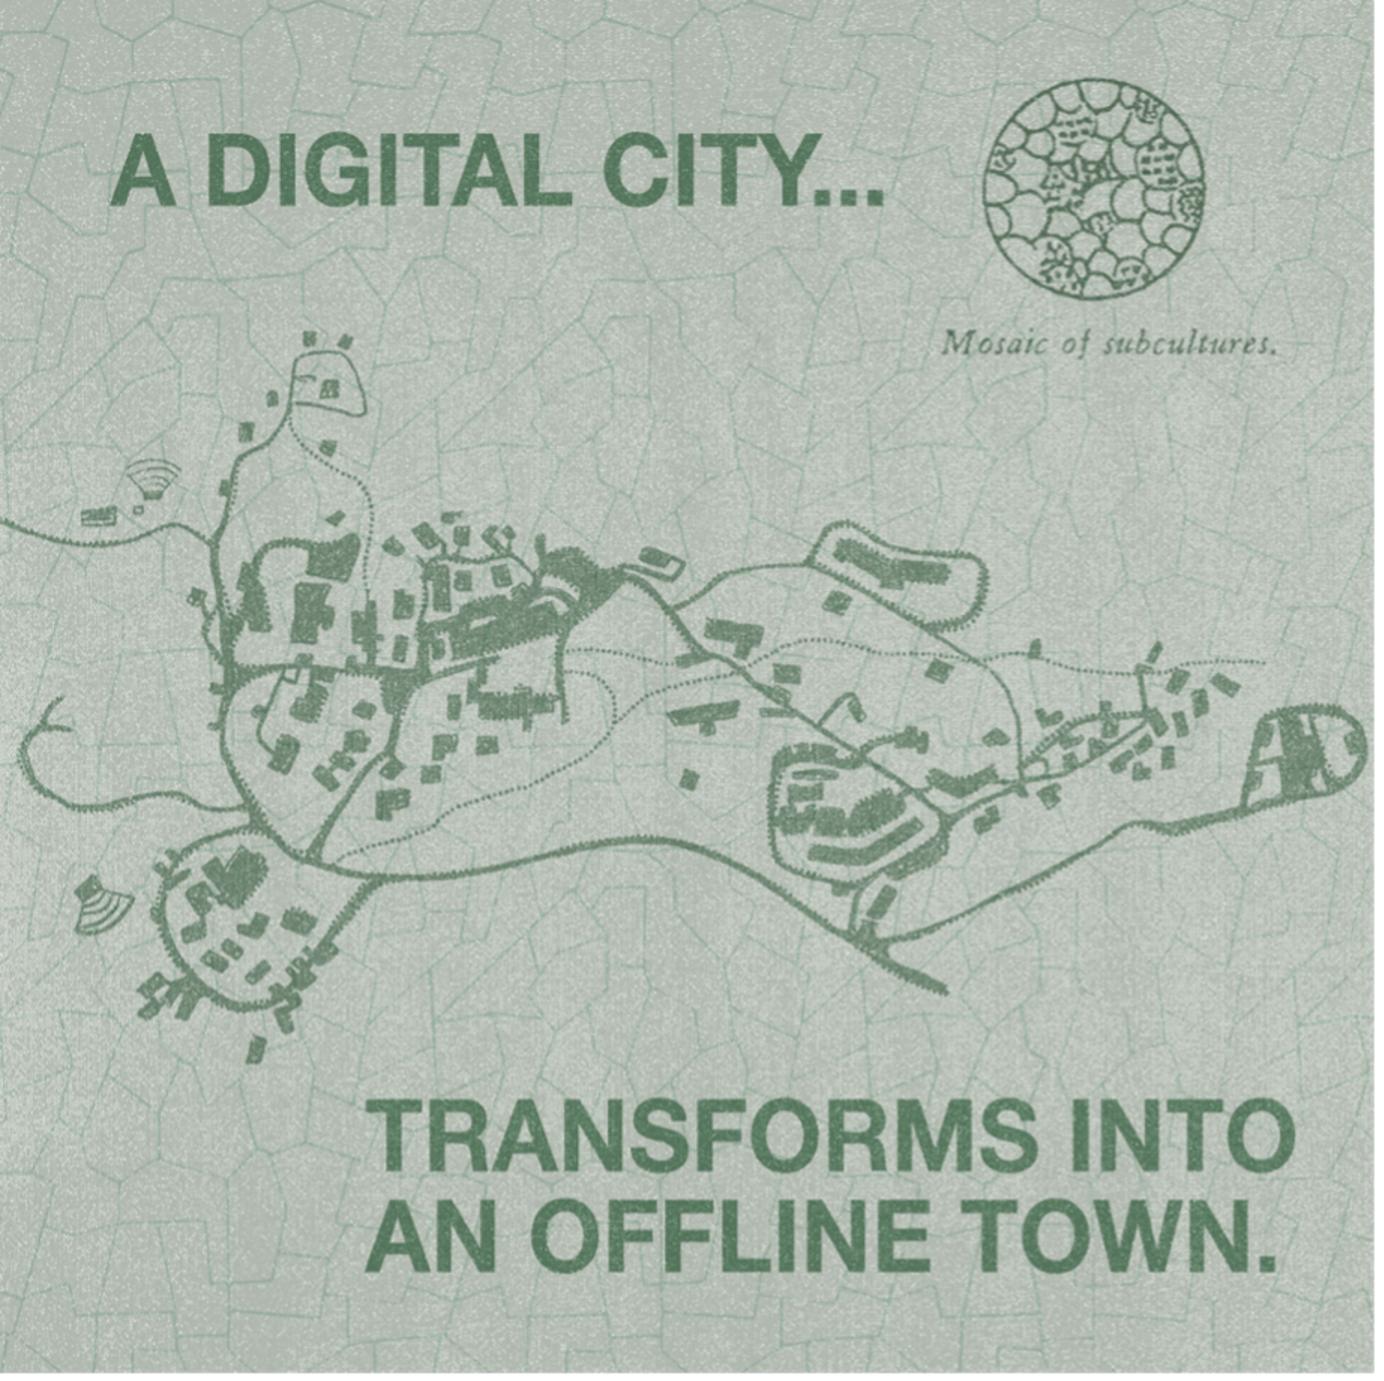 ‘A Digital City’ - courtesy of FWB